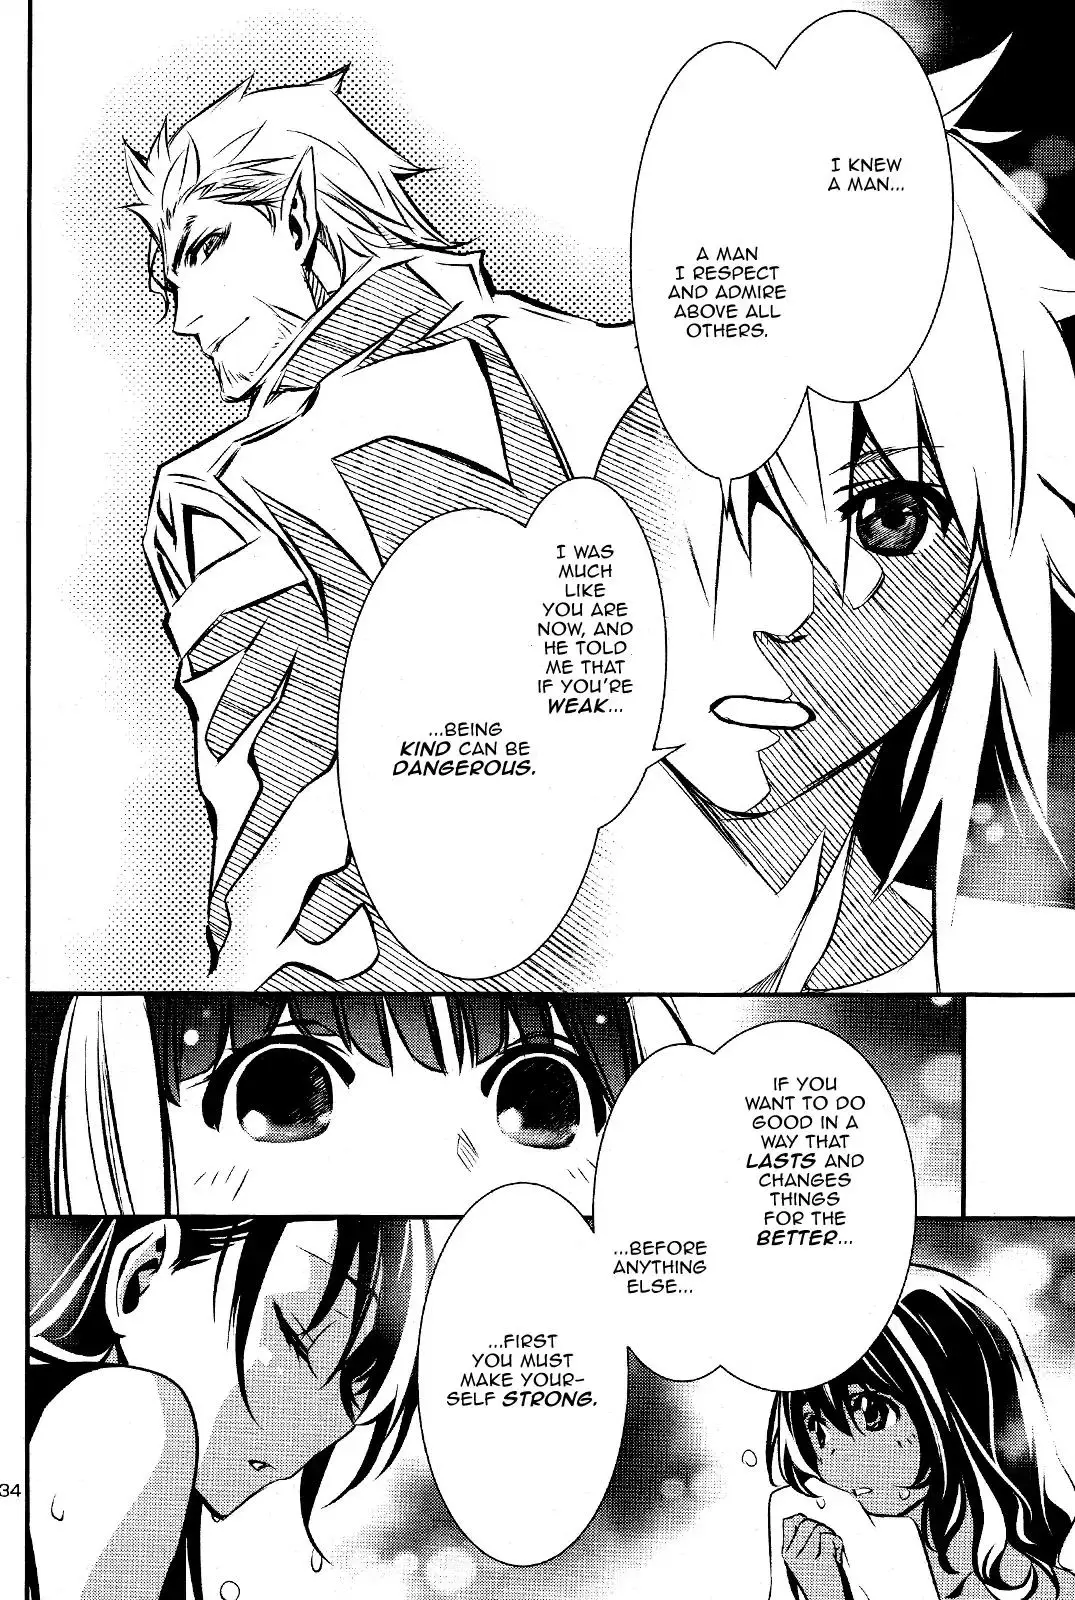 Shinju no Nectar - 29 page 34